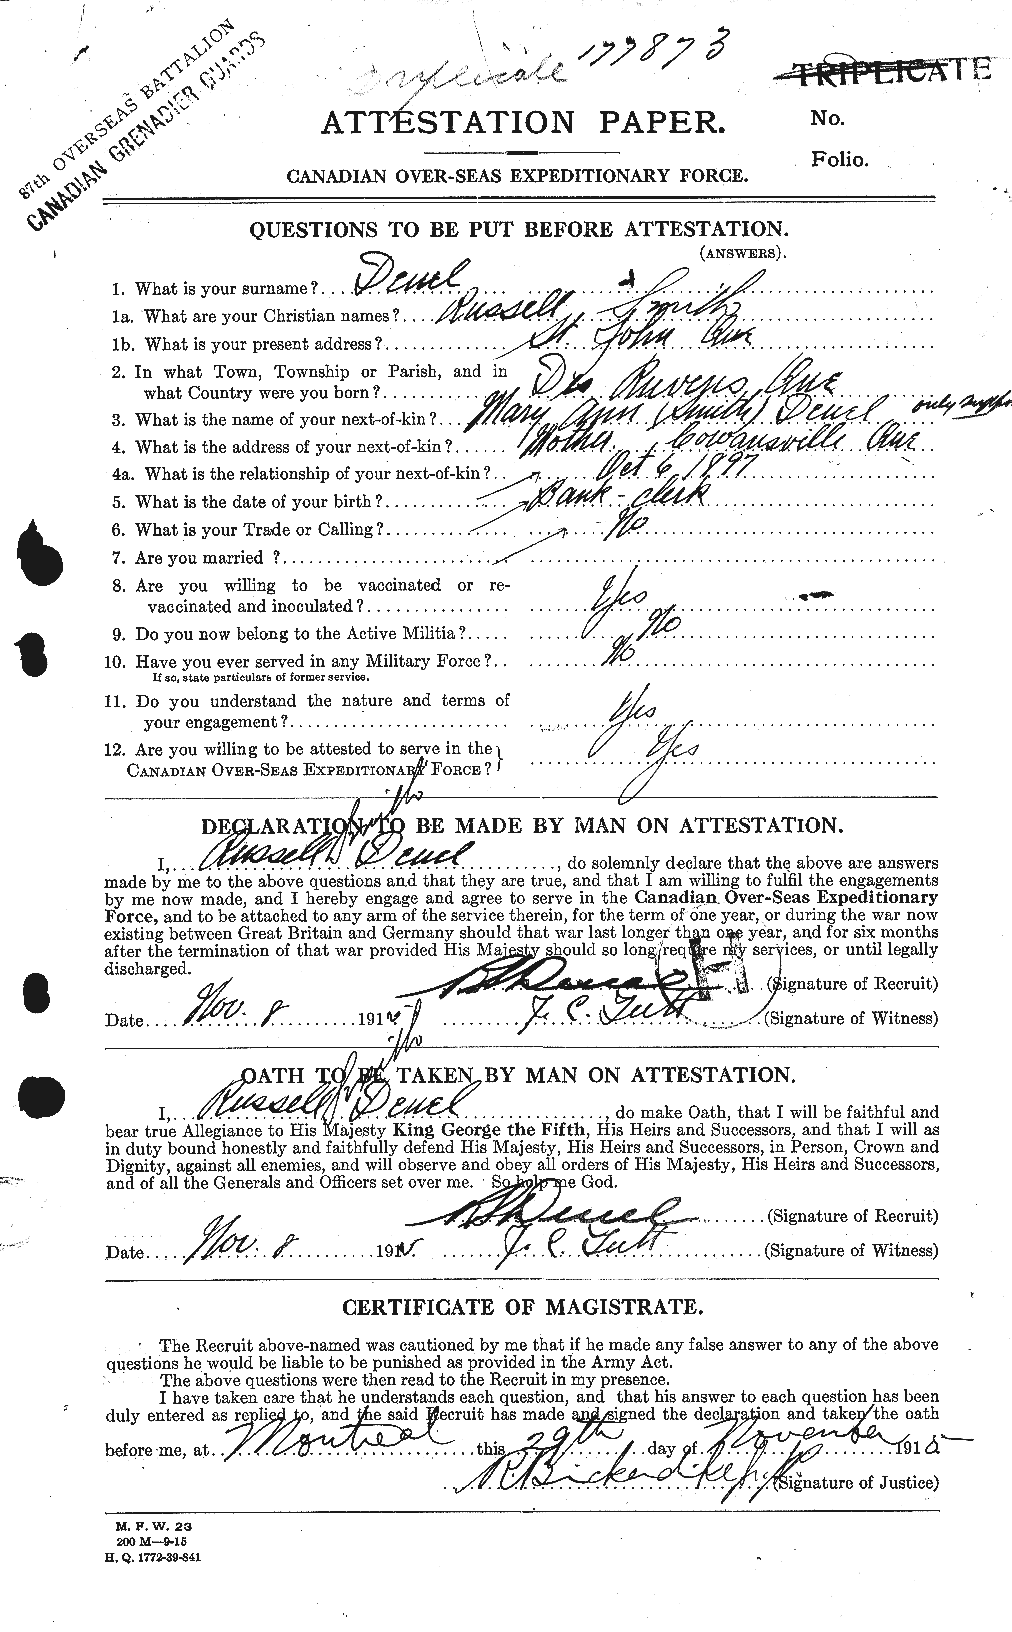 Dossiers du Personnel de la Première Guerre mondiale - CEC 289486a